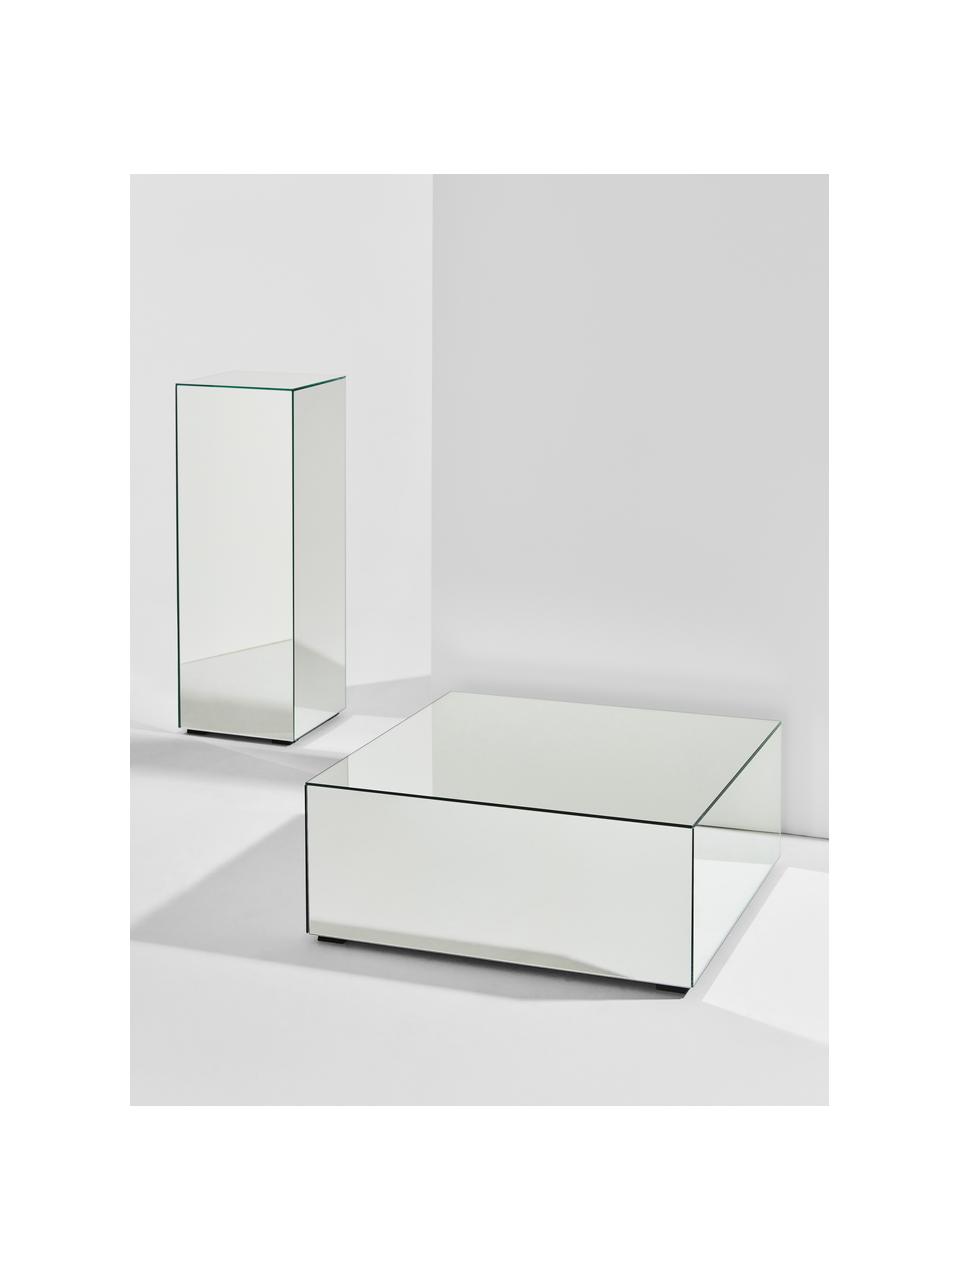 Dekosäule Pop mit Spiegel-Effekt, Mitteldichte Holzfaserplatte (MDF), Spiegelglas, Spiegelglas, B 27 x H 75 cm